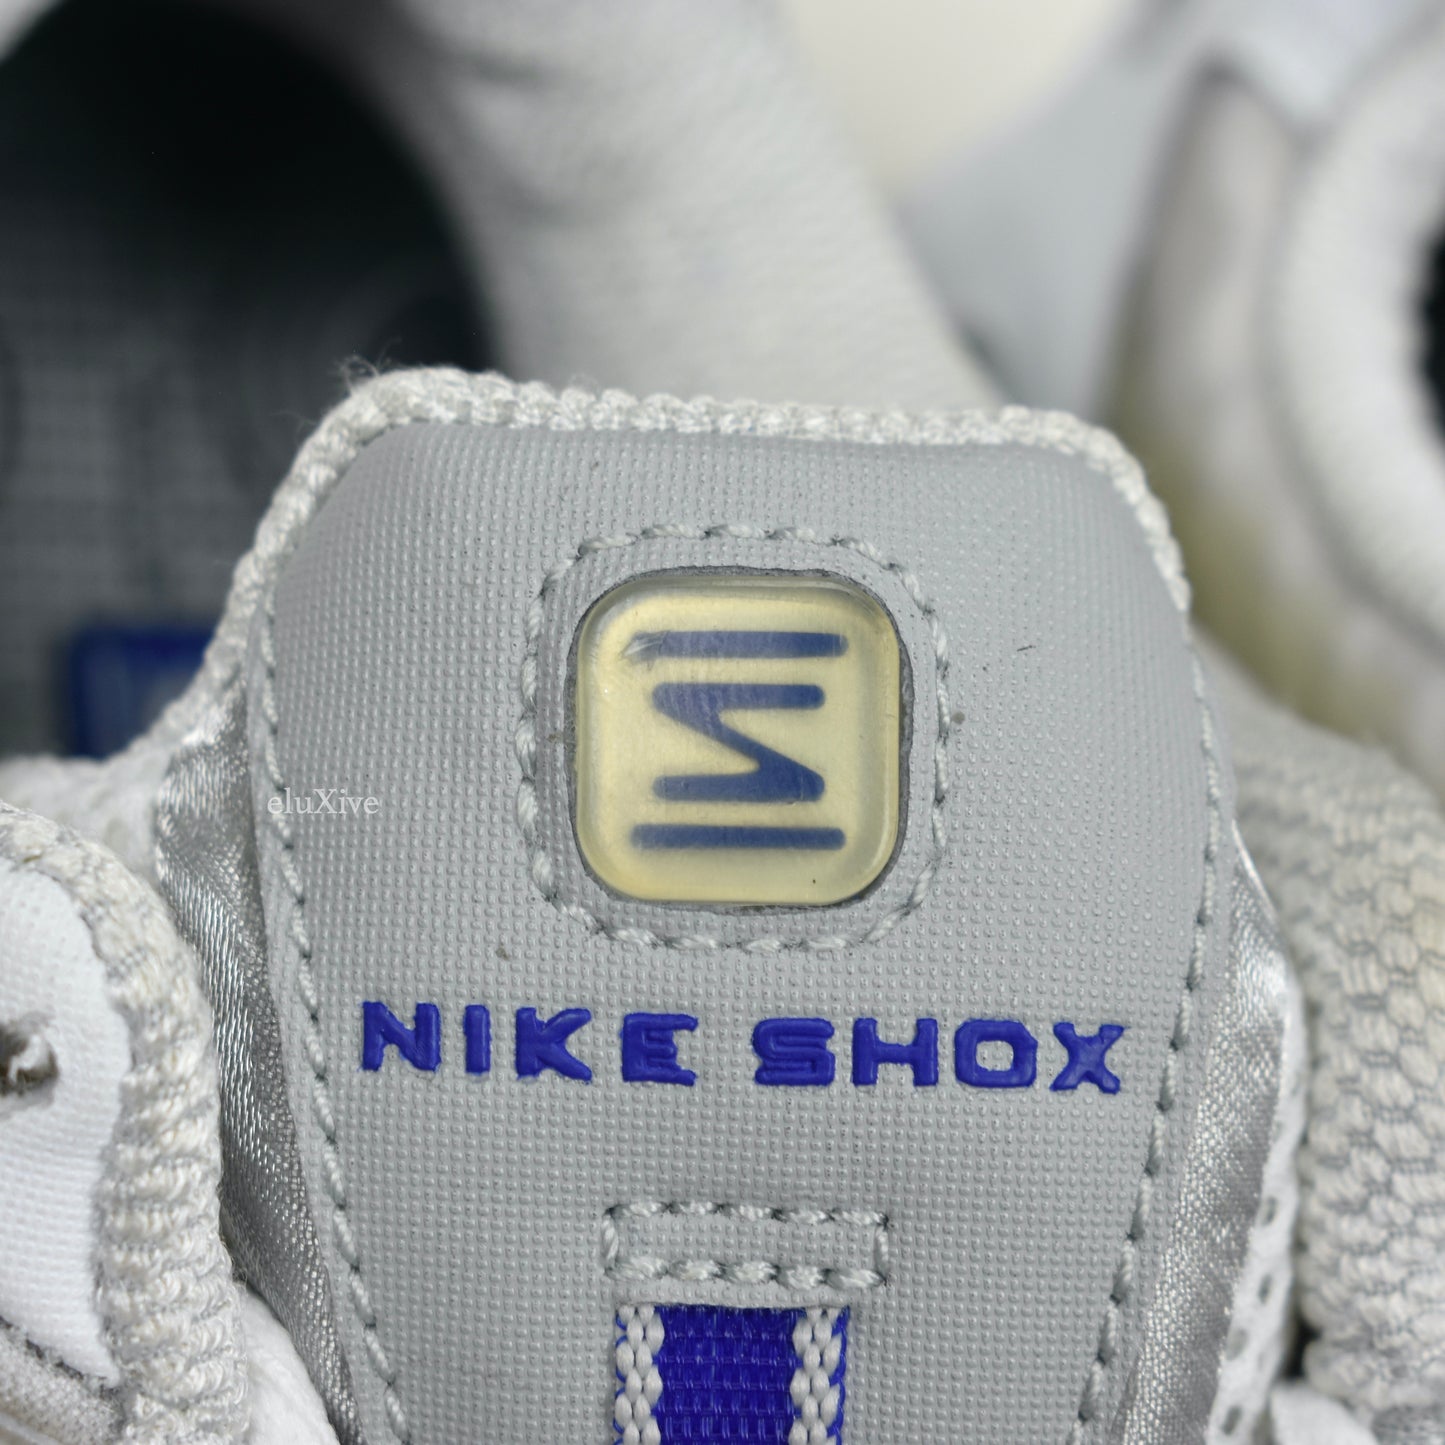 Nike - Shox TL OG White / Silver / Sport Royal Blue (2003)